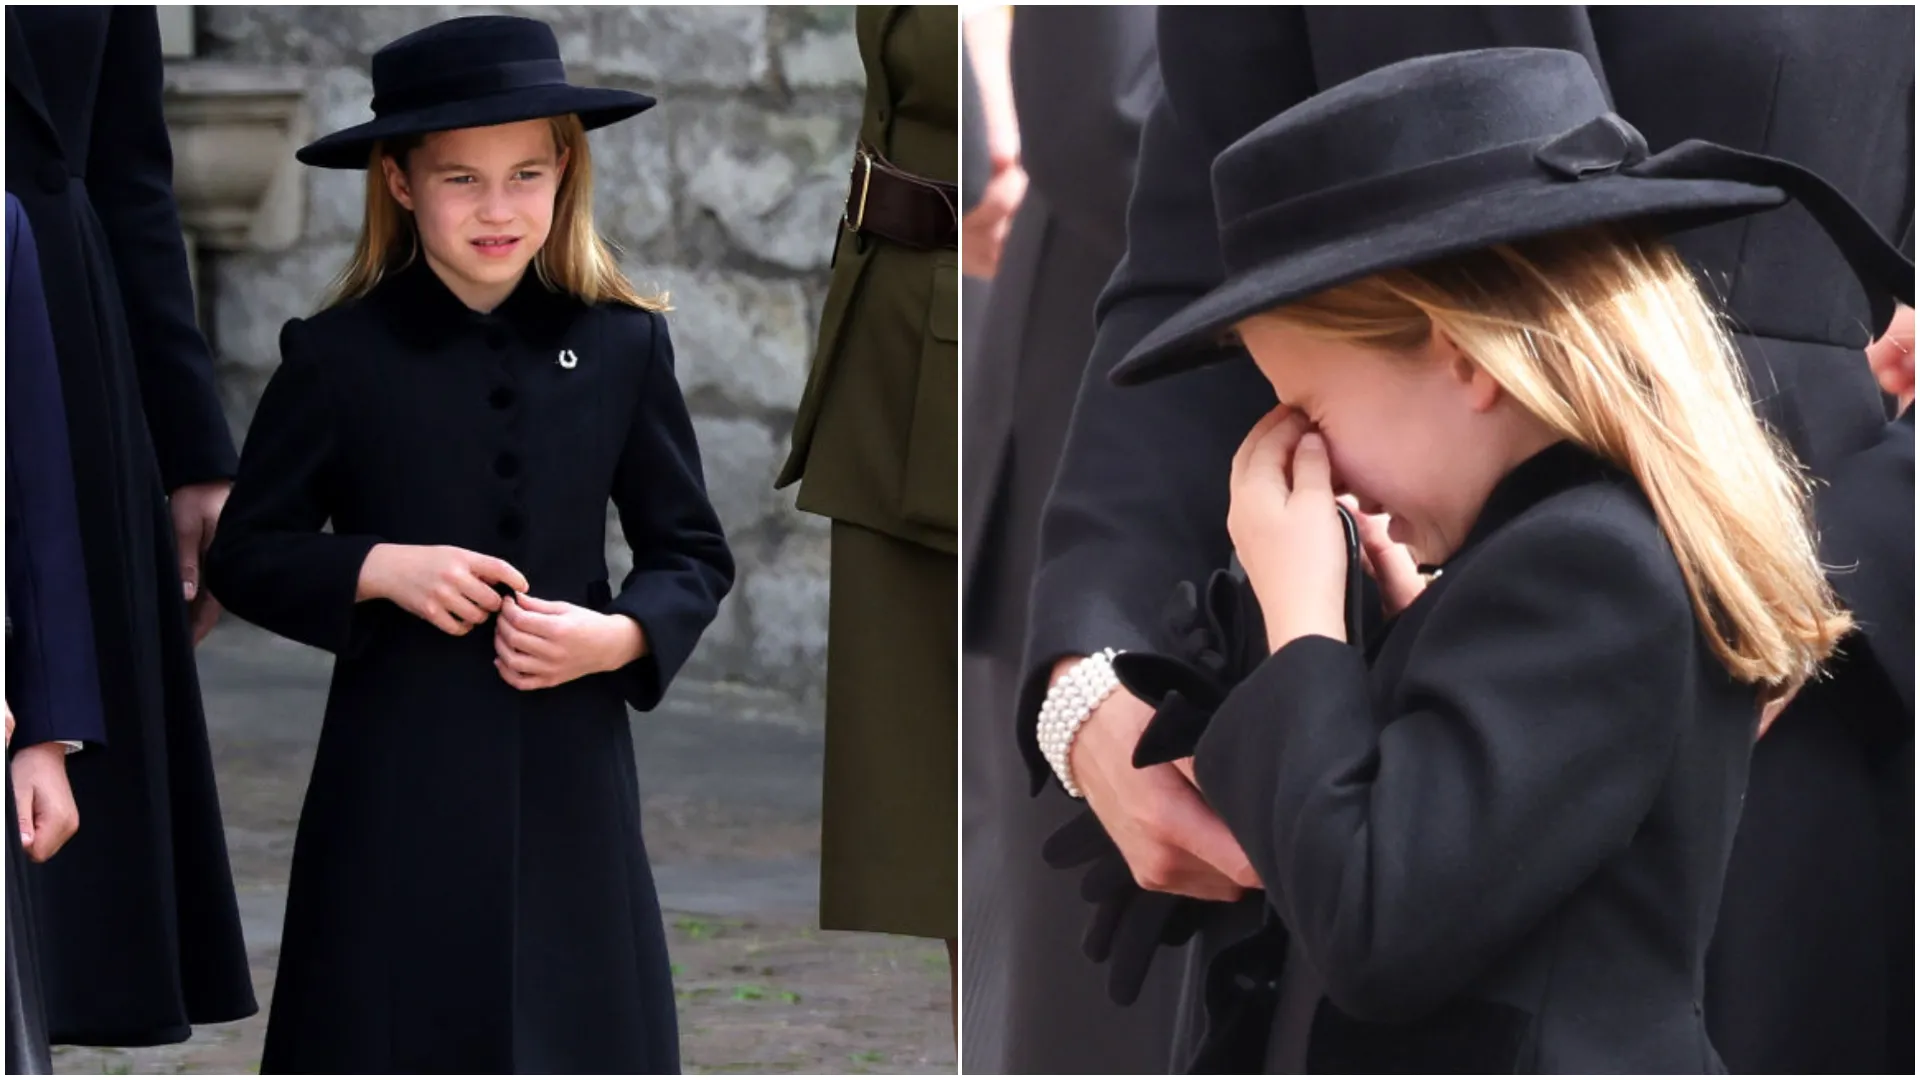 Сестрите знаят най-добре: защо Шарлот направи забележка на брат си - принц Джордж?